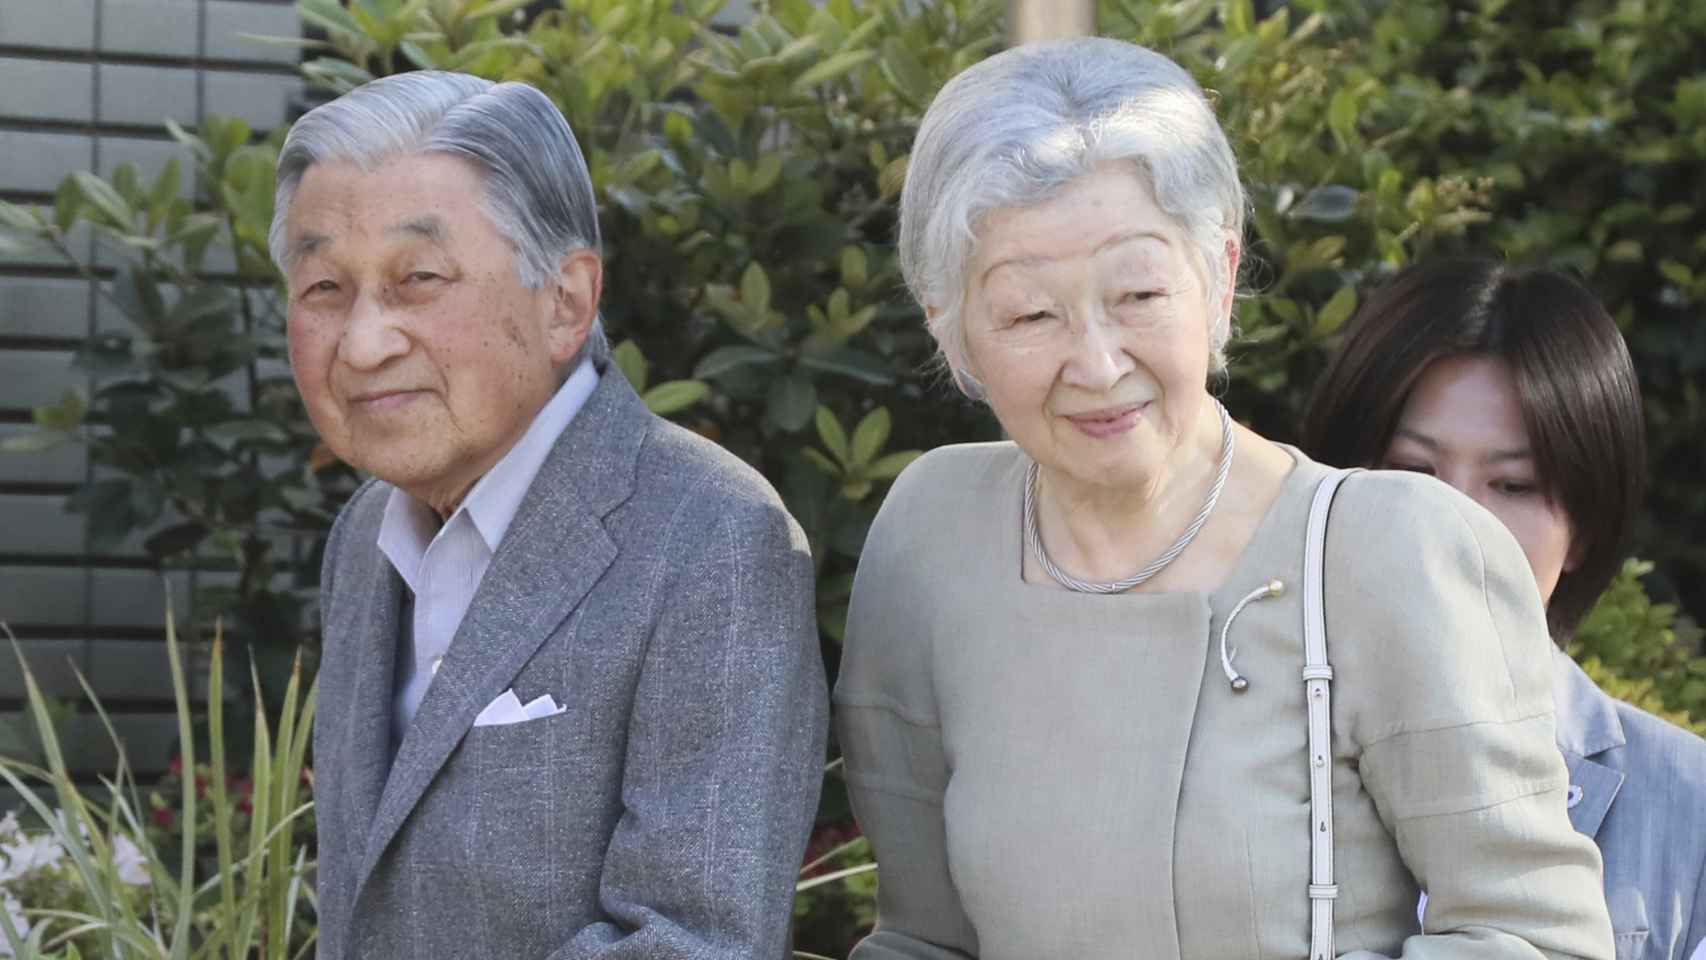 El emperador emérito Akihito junto a su esposa, Michiko, en una imagen tomada en mayo de 2019.